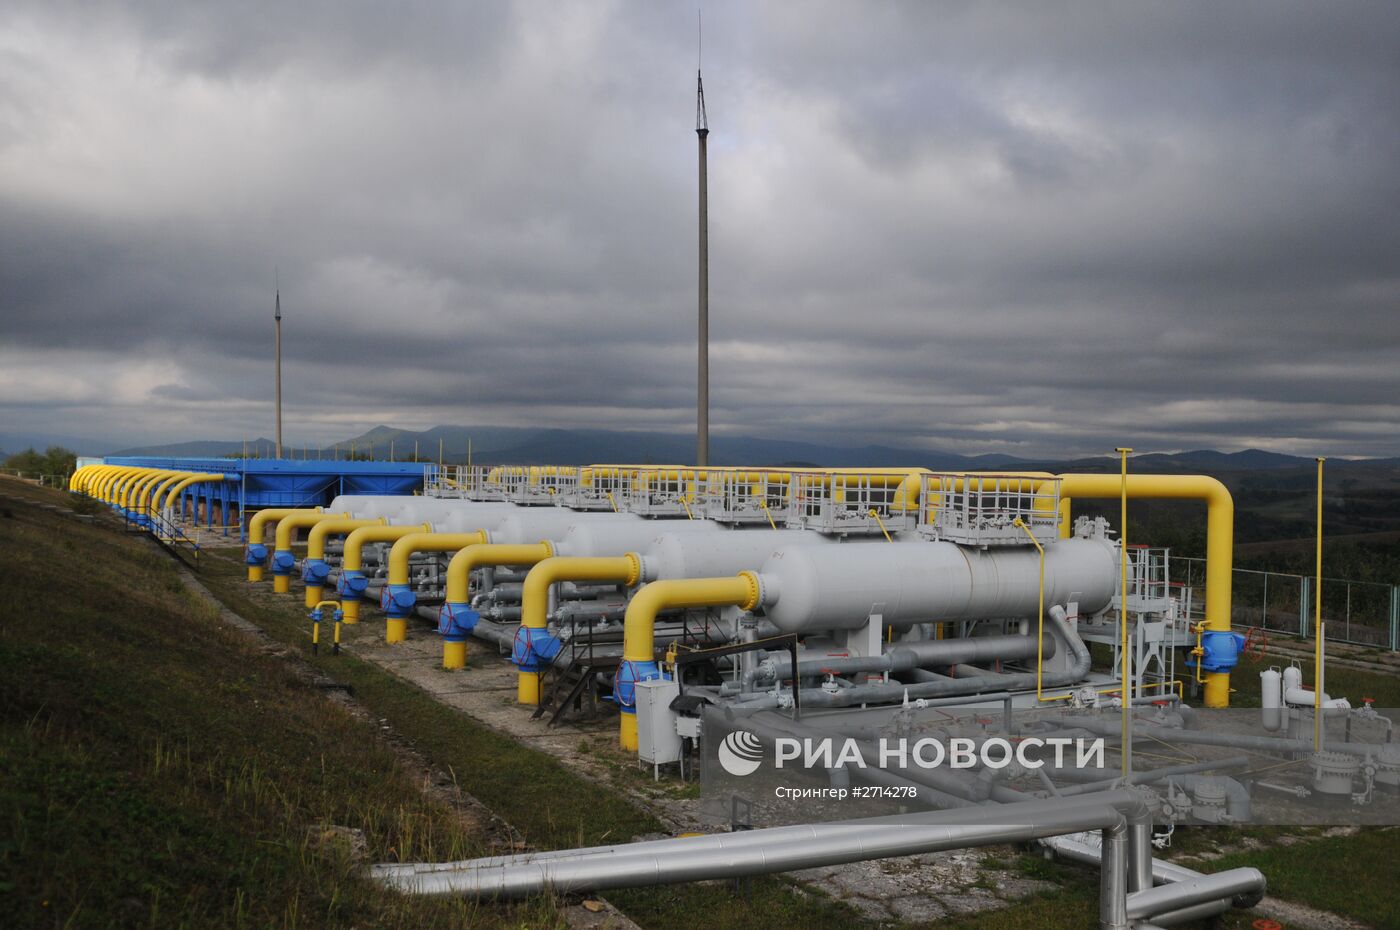 Высокогорная газокомпрессорная станция "Воловец" в Закарпатской области